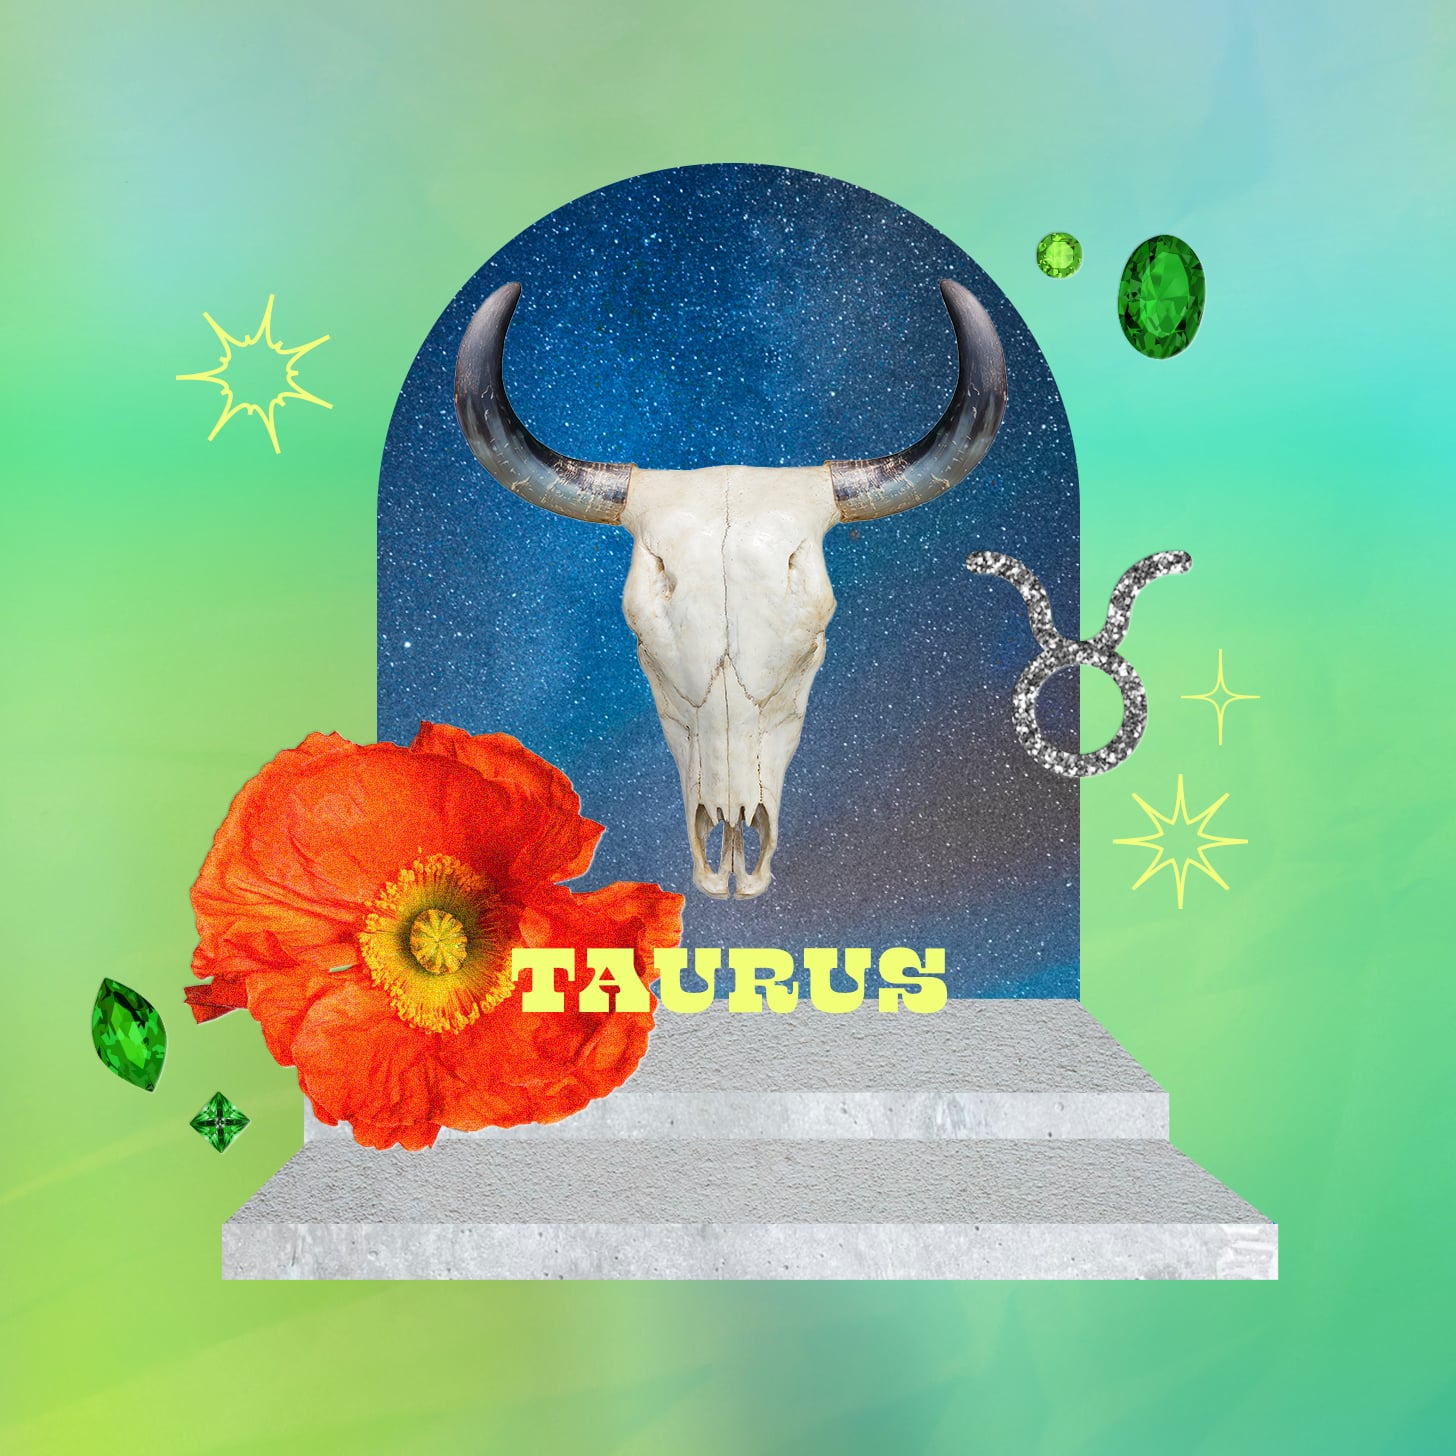 Taurus weekly horoscope for September 18, 2022